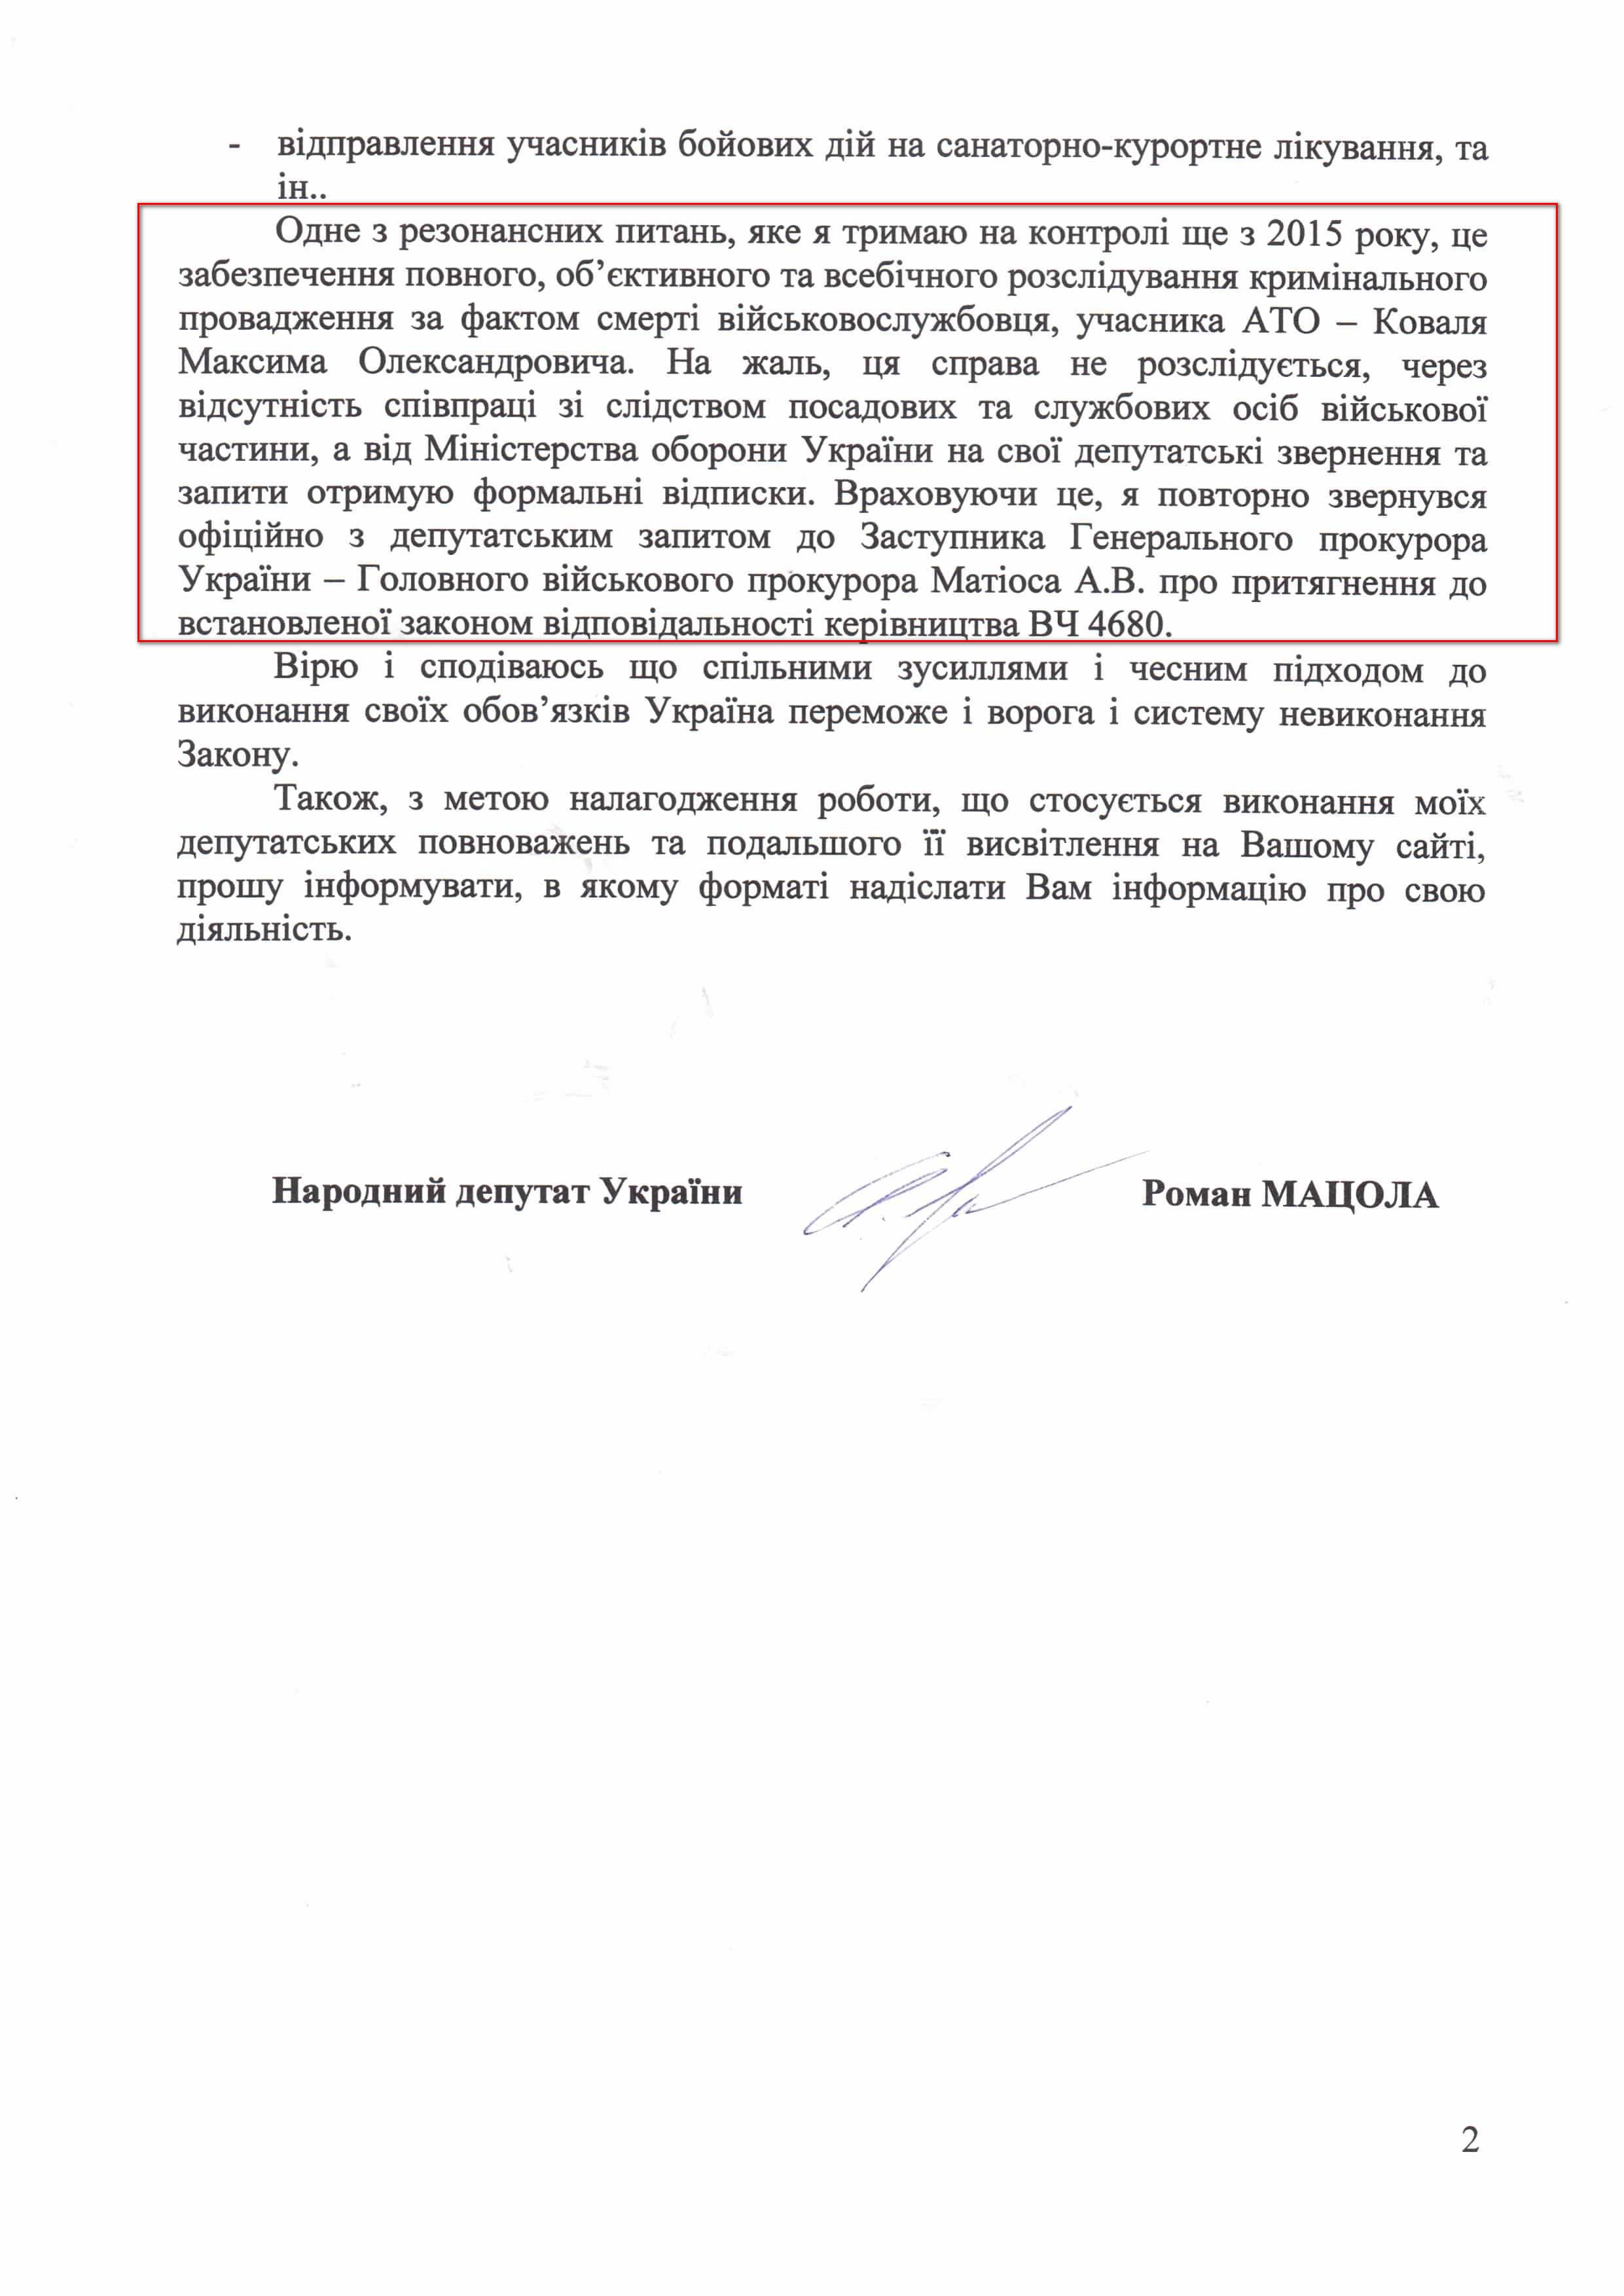 Лист народного депутата України Романа Мацоли №388/163 від 29 травня 2017 року